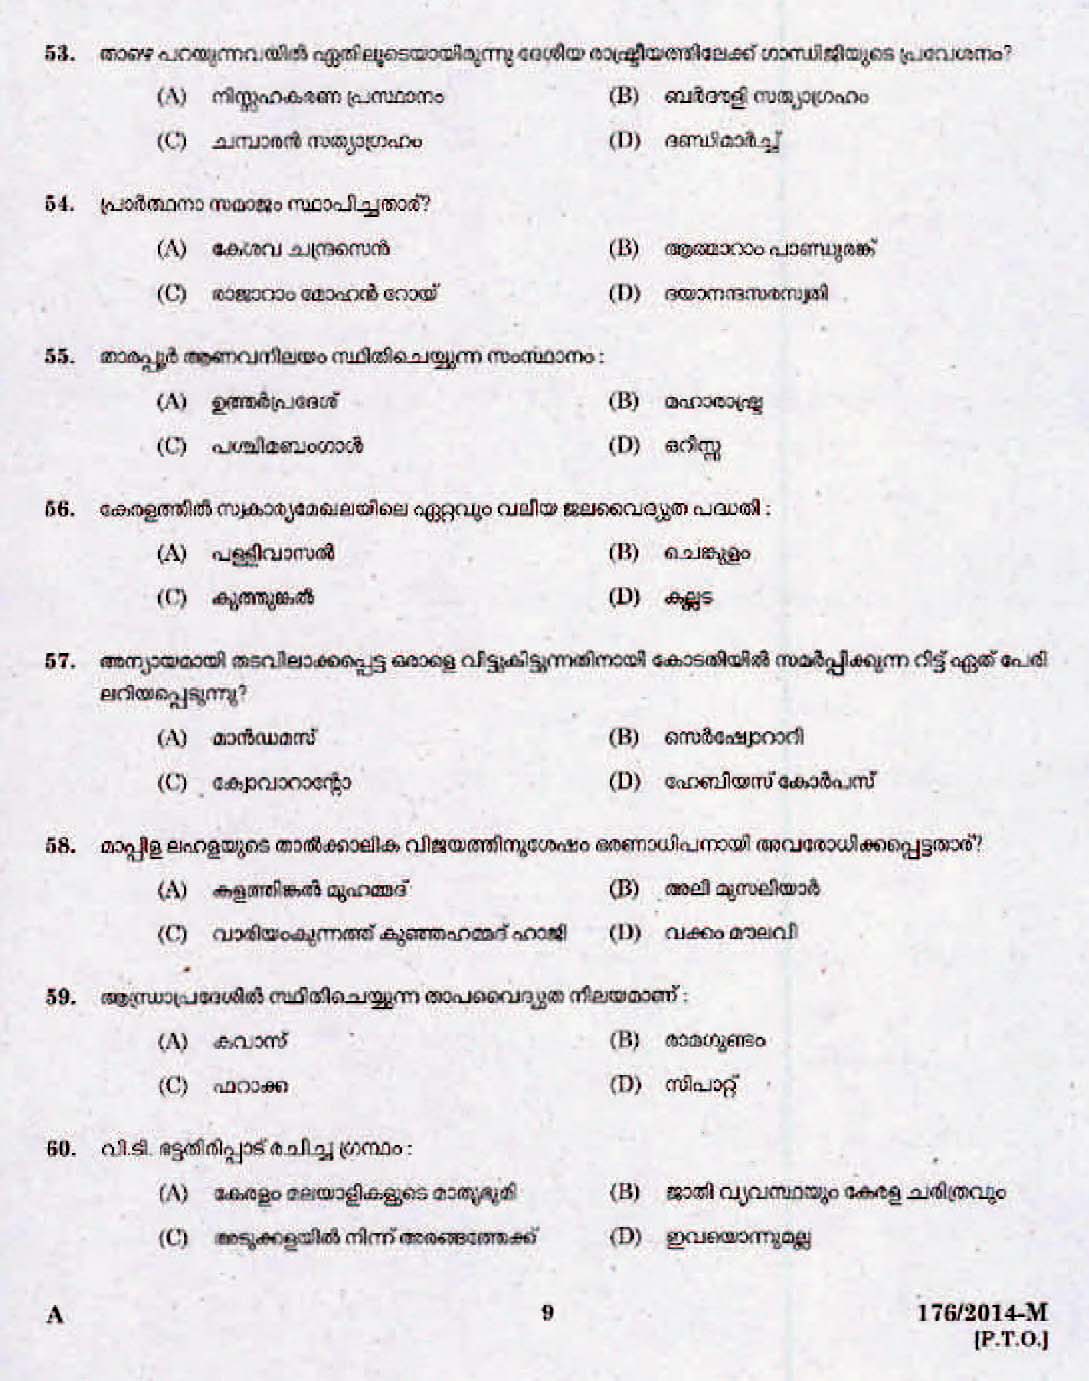 Kerala Last Grade Servants Exam 2014 Question Paper Code 1762014 M 7